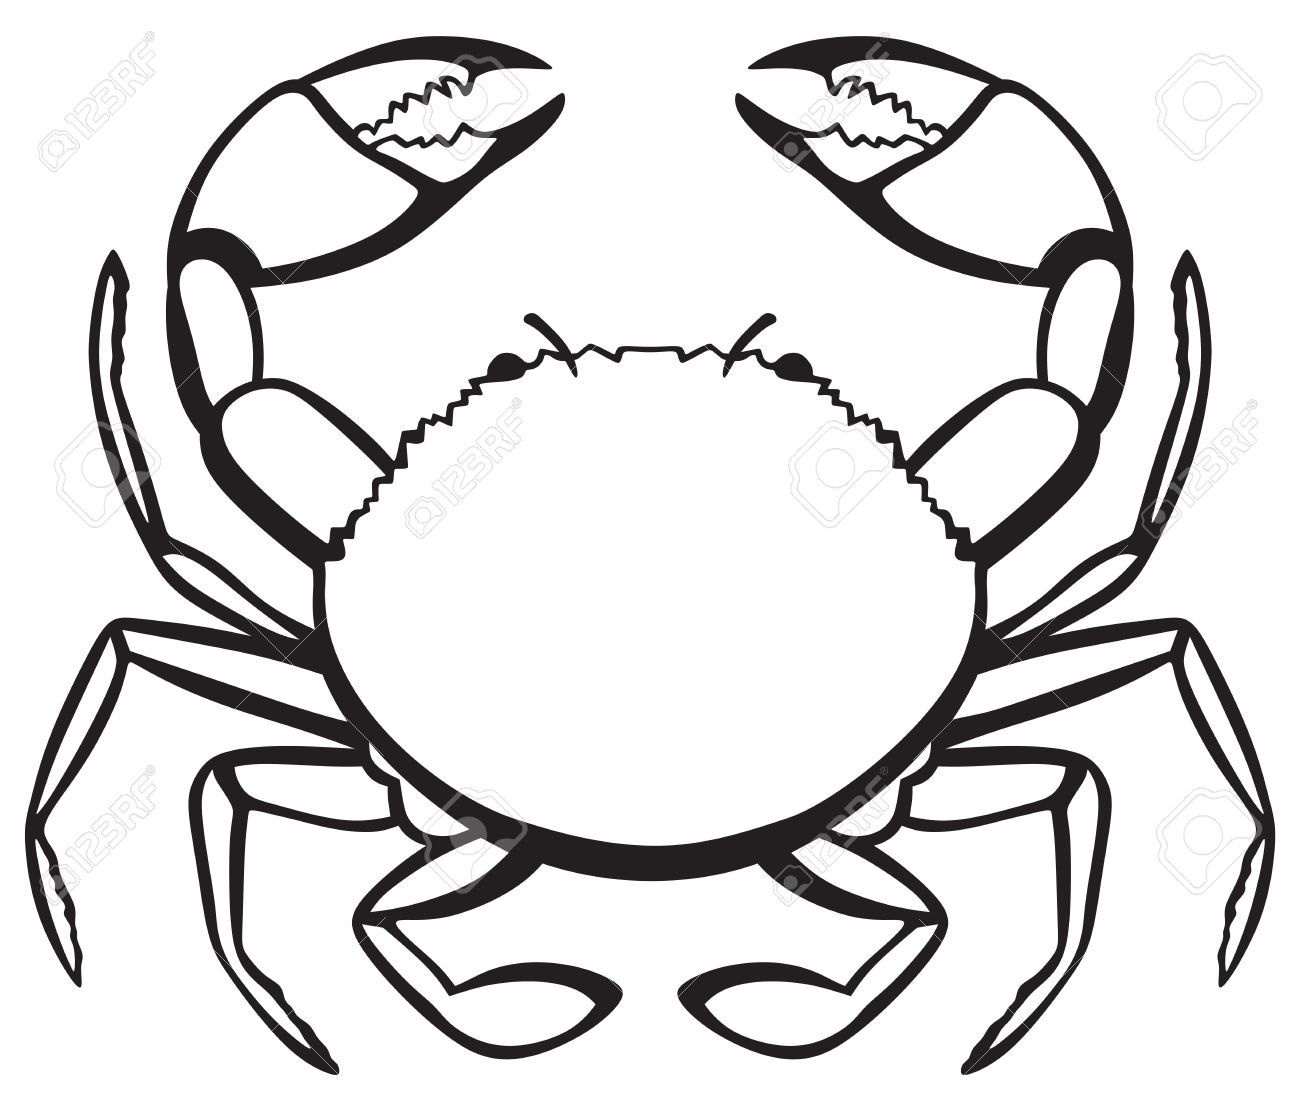 Pin on Comic Crabs